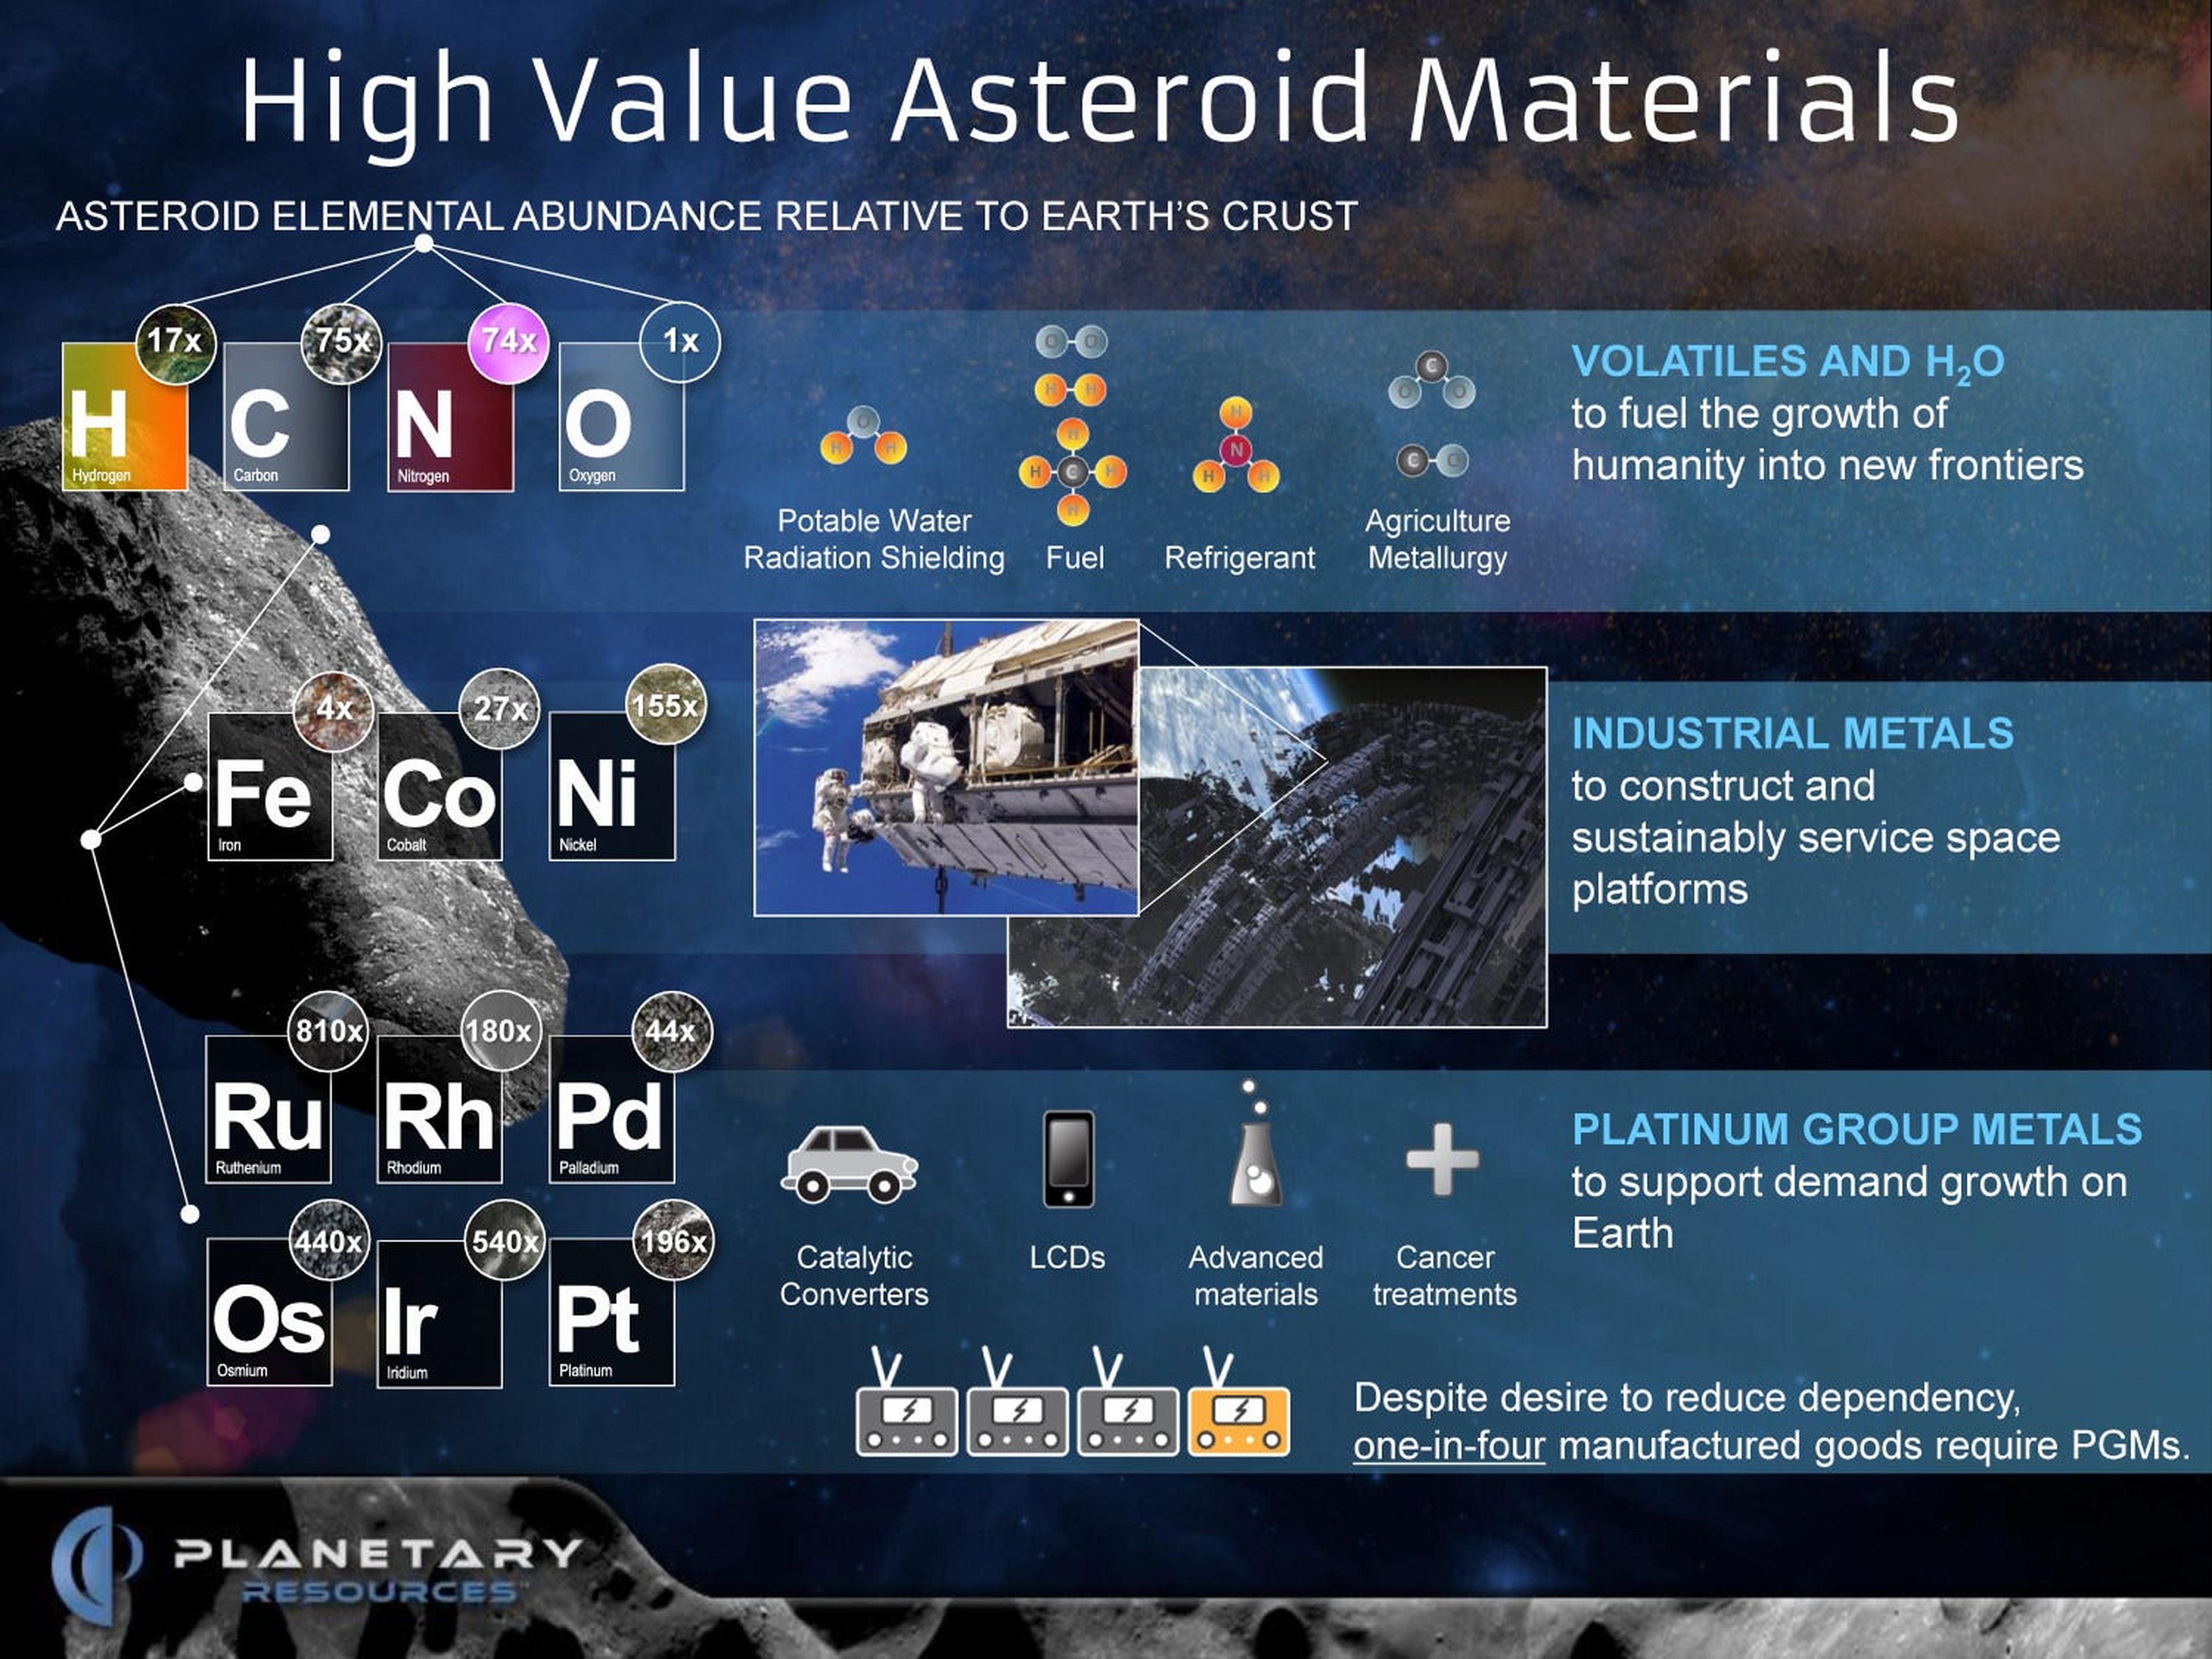 Una infografía creada por Planetary Resources que muestra el detalle de los recursos de valor que se encuentran en muchos asteroides.